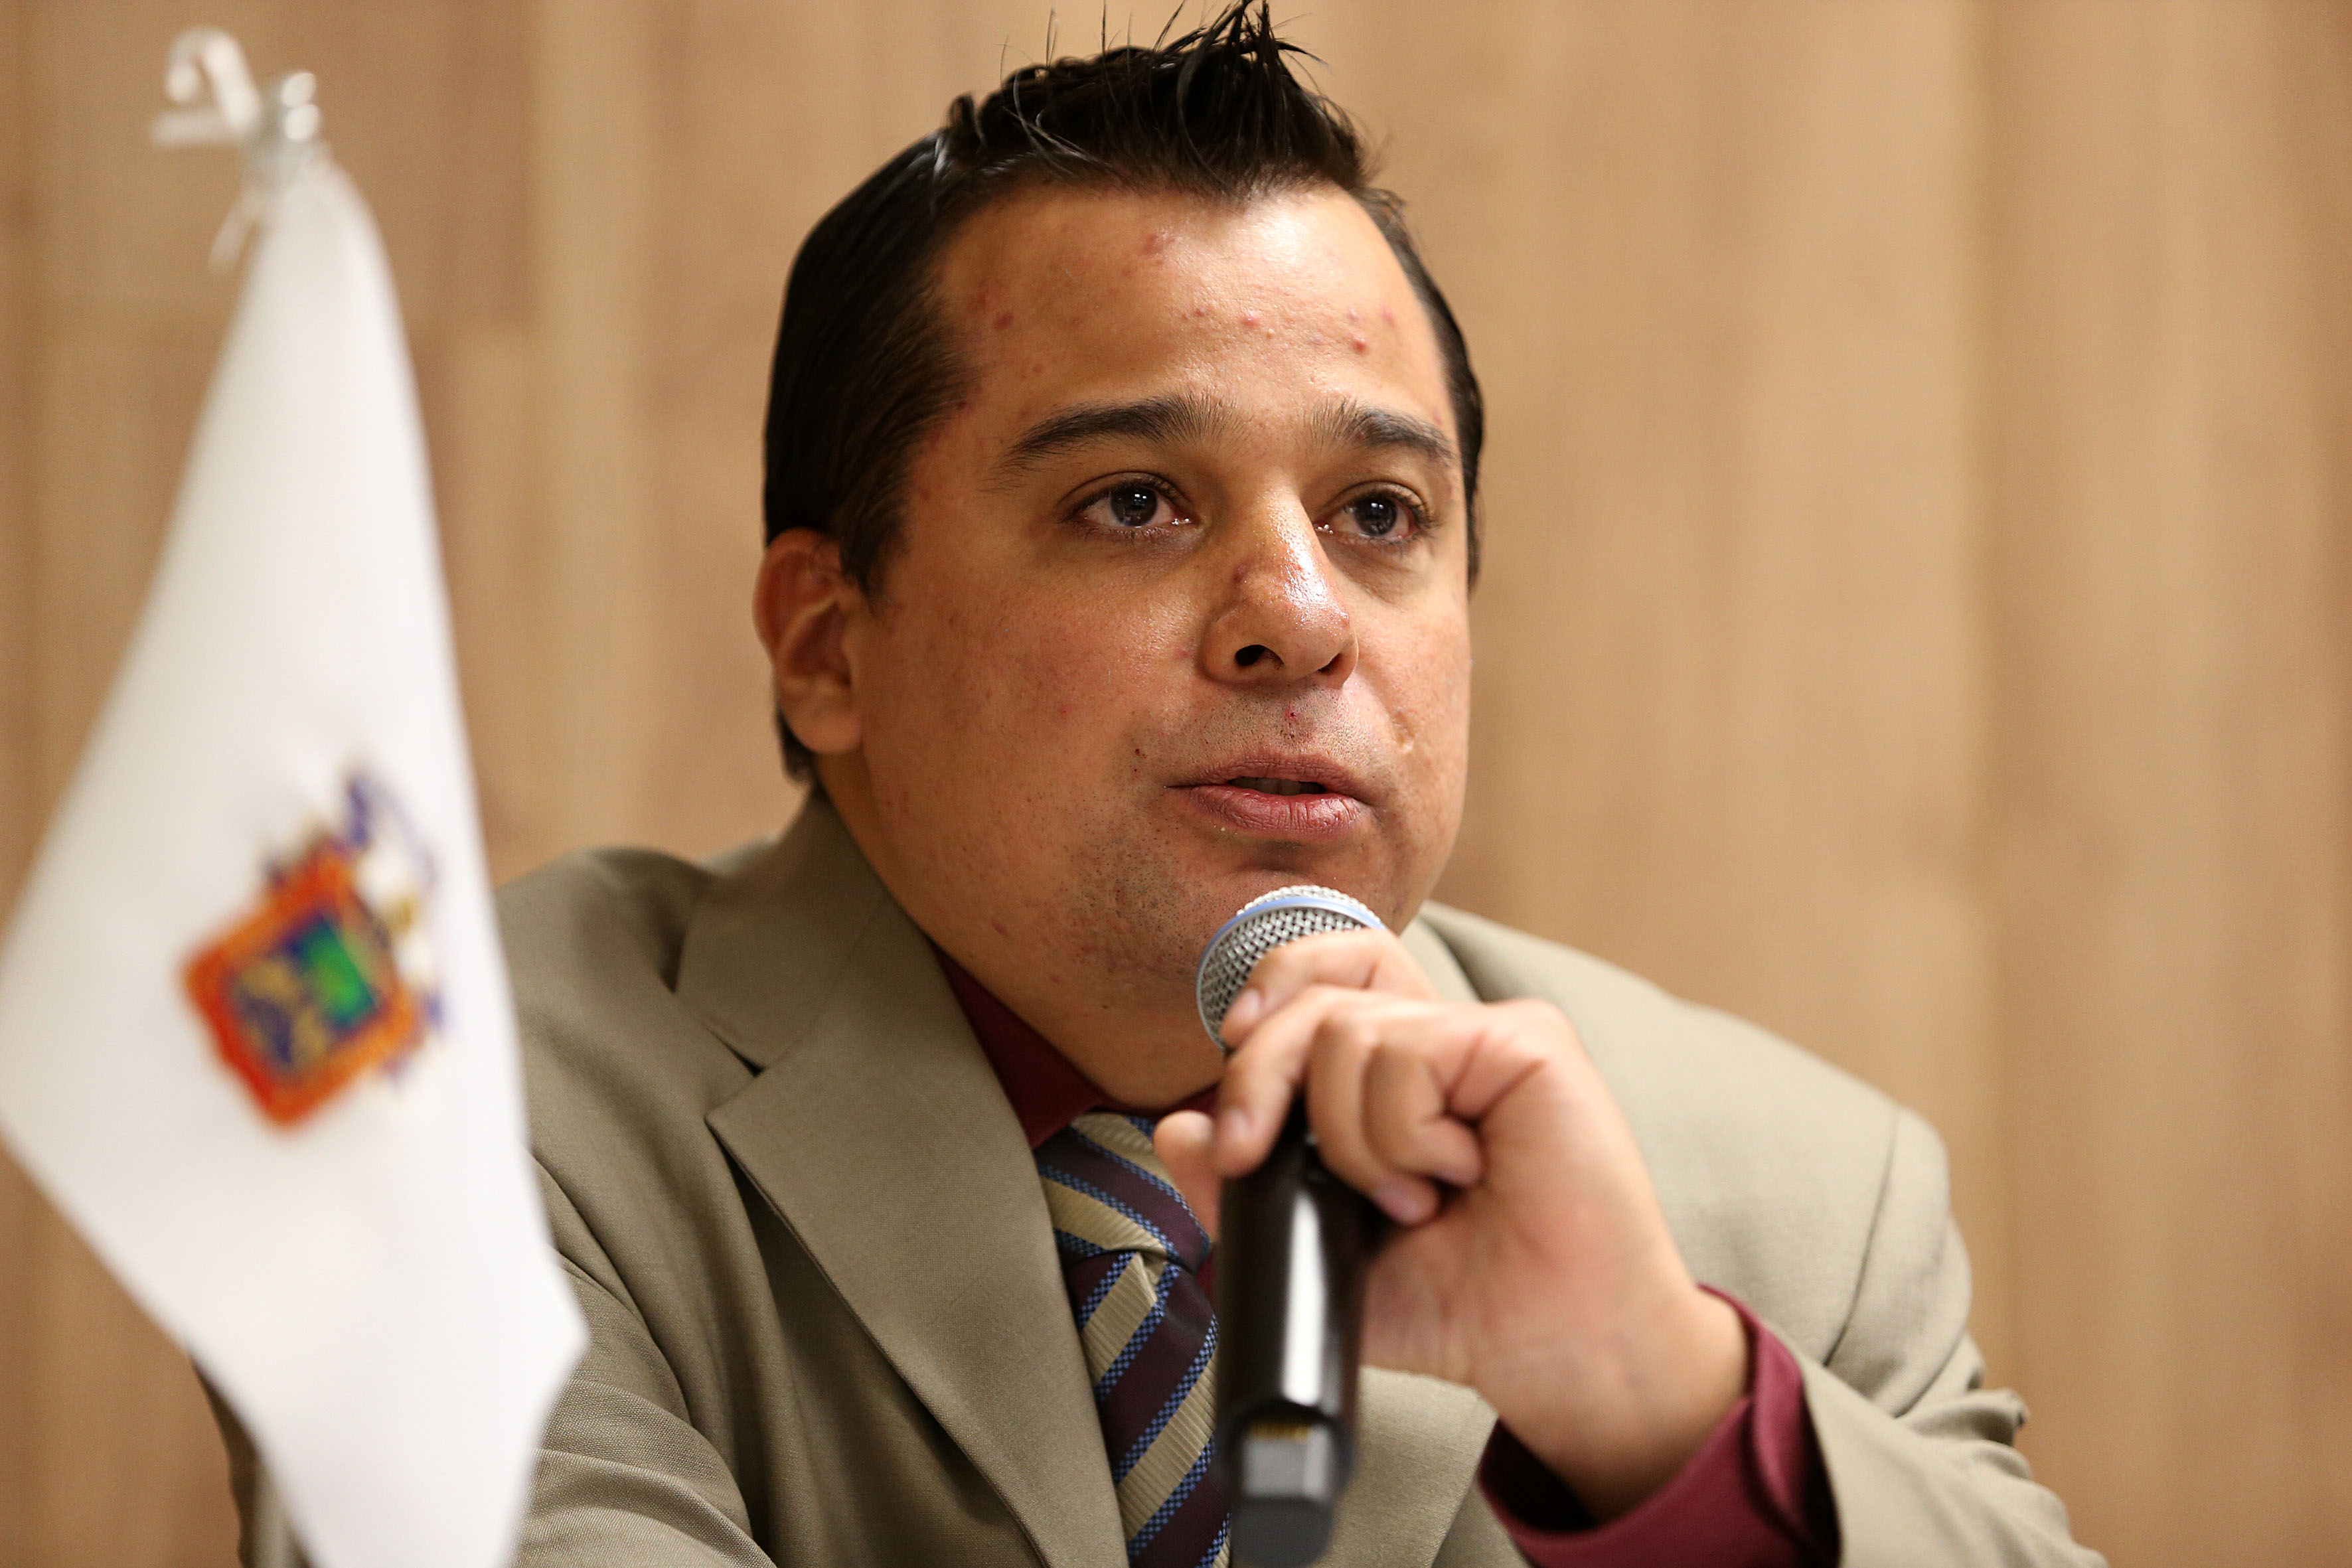 Dr. Iván Alejandro Salas Durazo hablando por micrófono